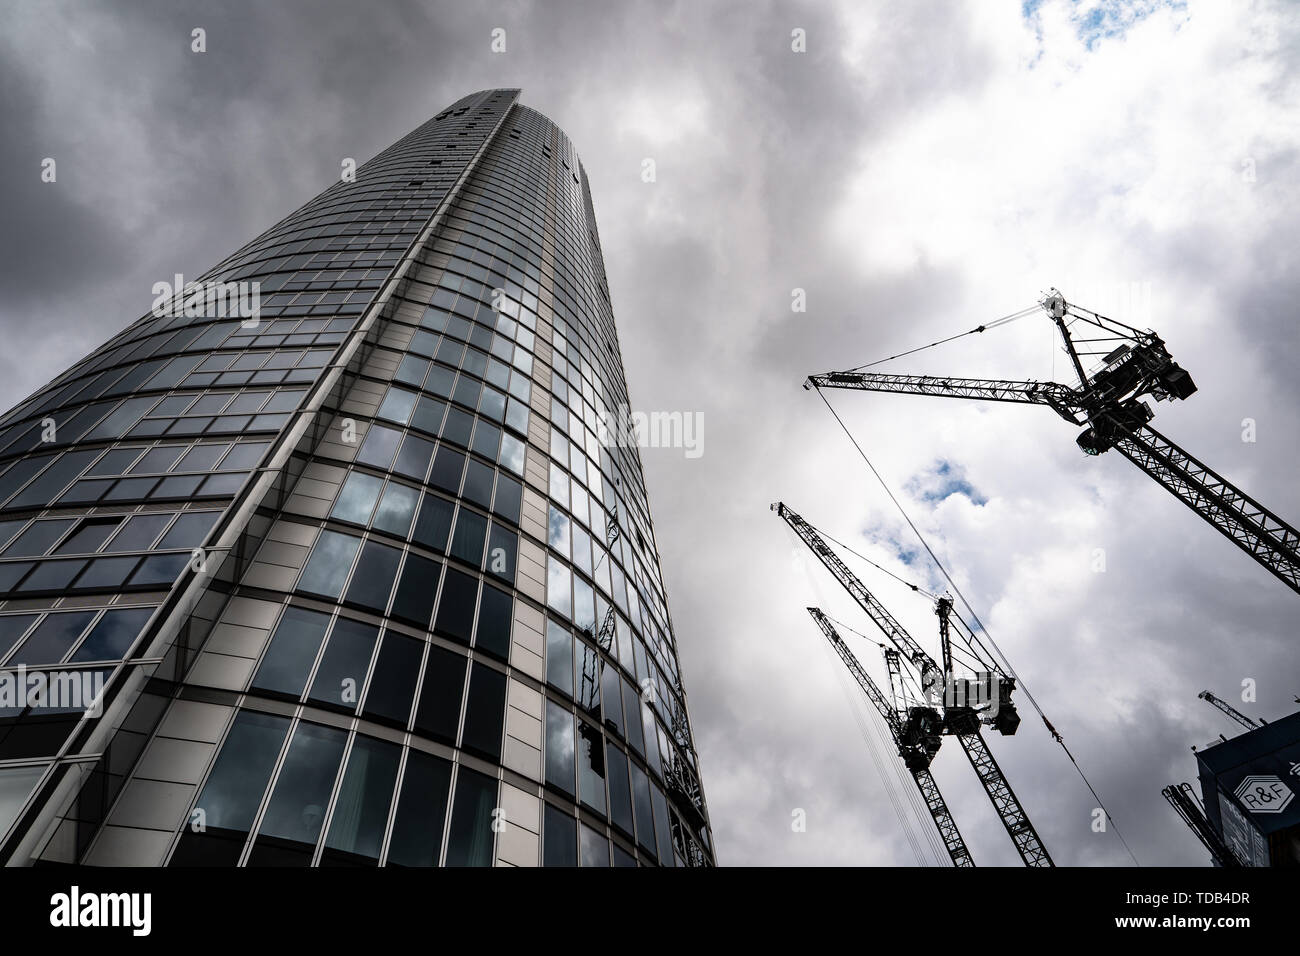 Der Turm, ein St George Wharf von Broadway Malyan (2012). Aus einer offenen Stadt Architektur Tour der Neun Bereich Elms von London. Foto Datum: Dienstag, Ju Stockfoto